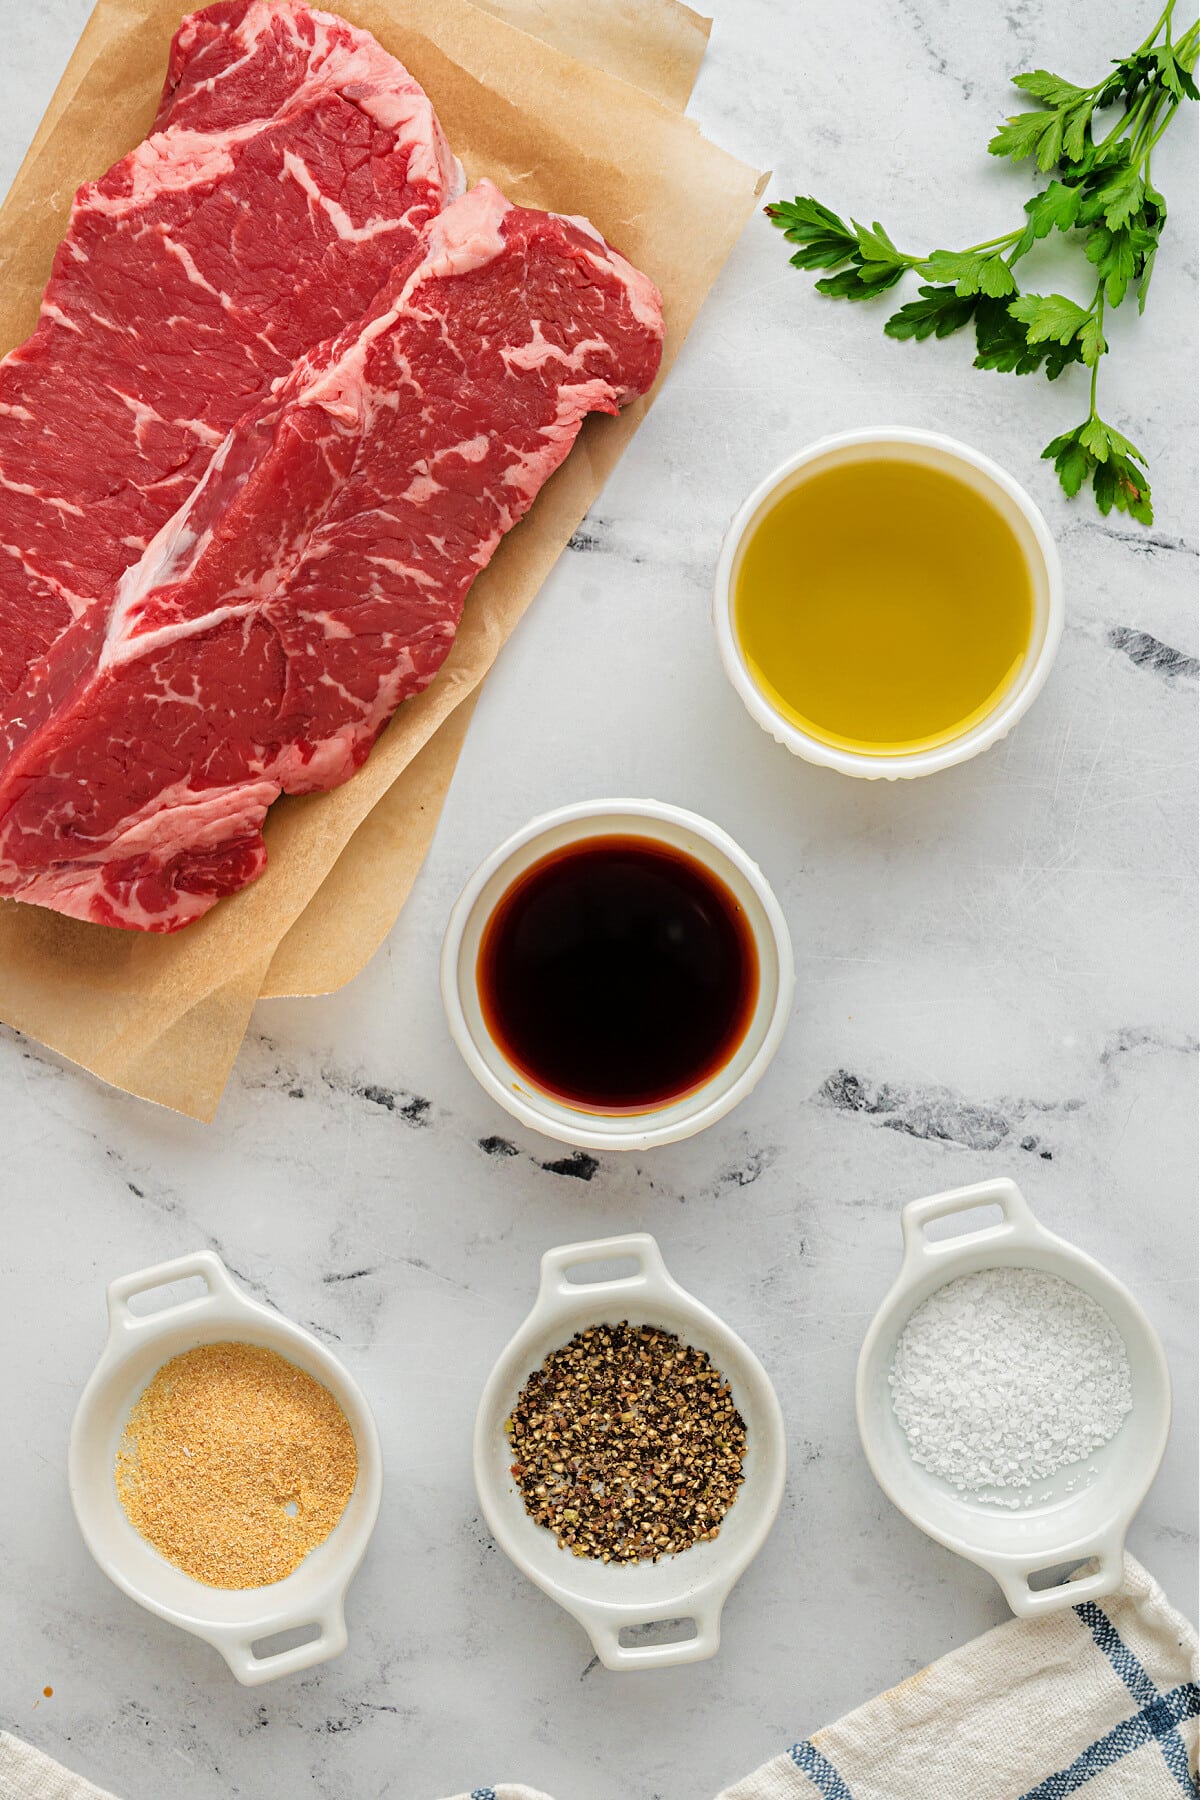 ingredients needed to make air fryer steak bites